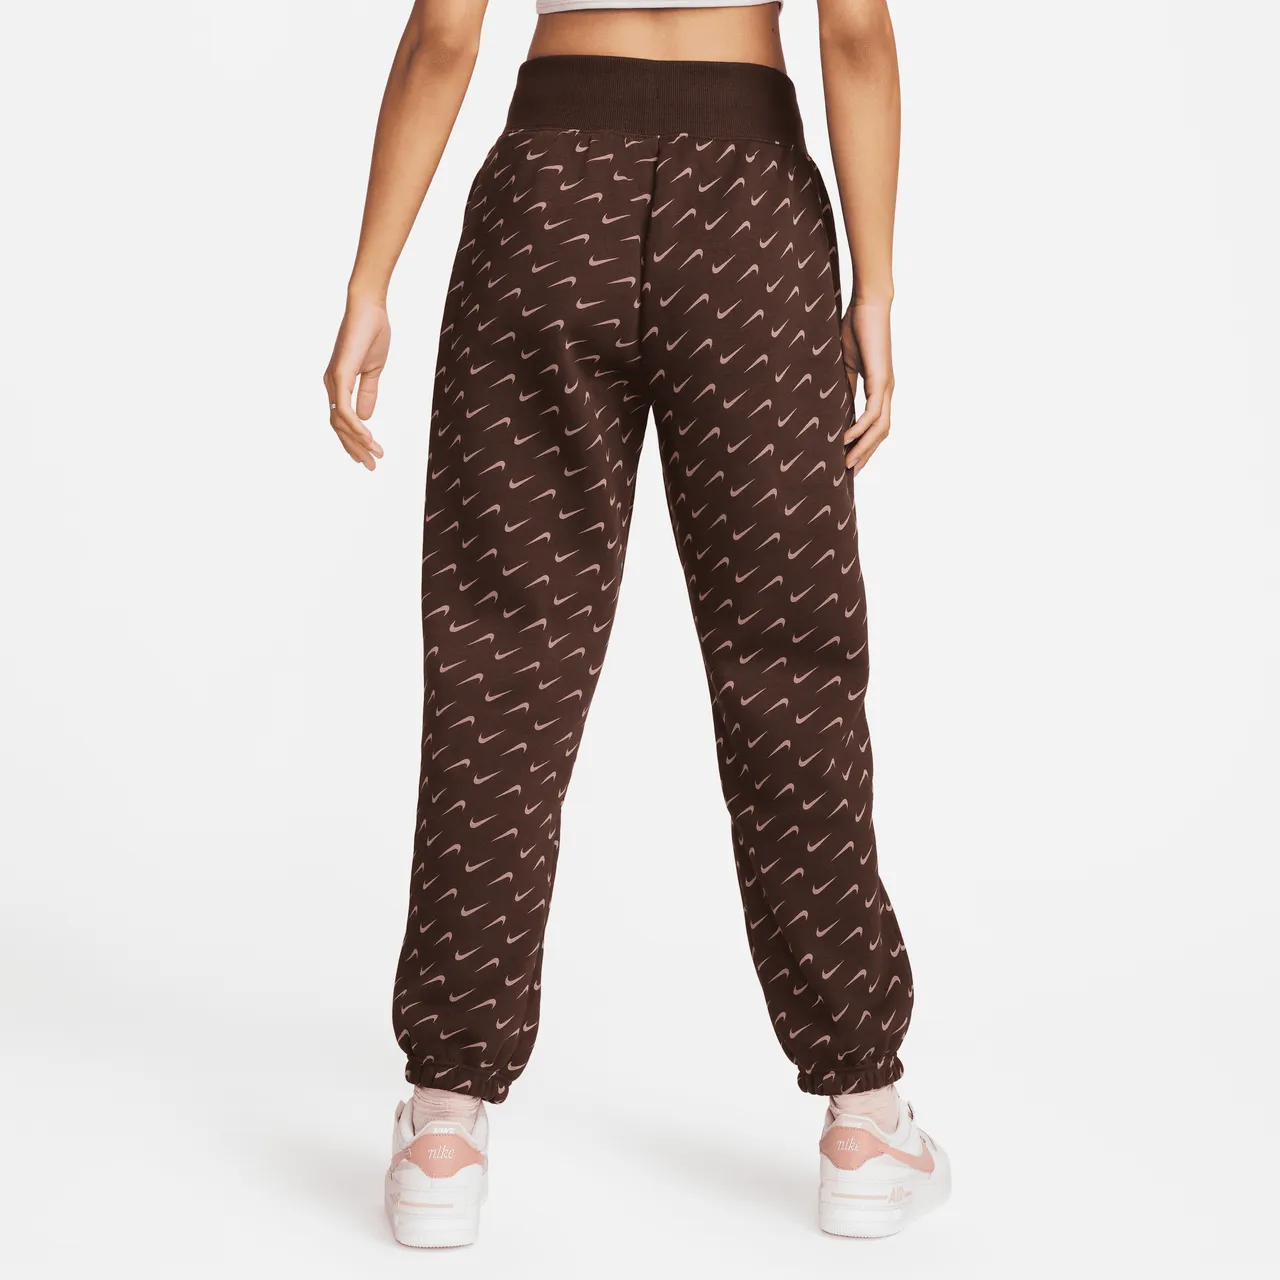 Nike Sportswear Phoenix Fleece Women's Oversized Printed Tracksuit Bottoms - Brown - Polyester